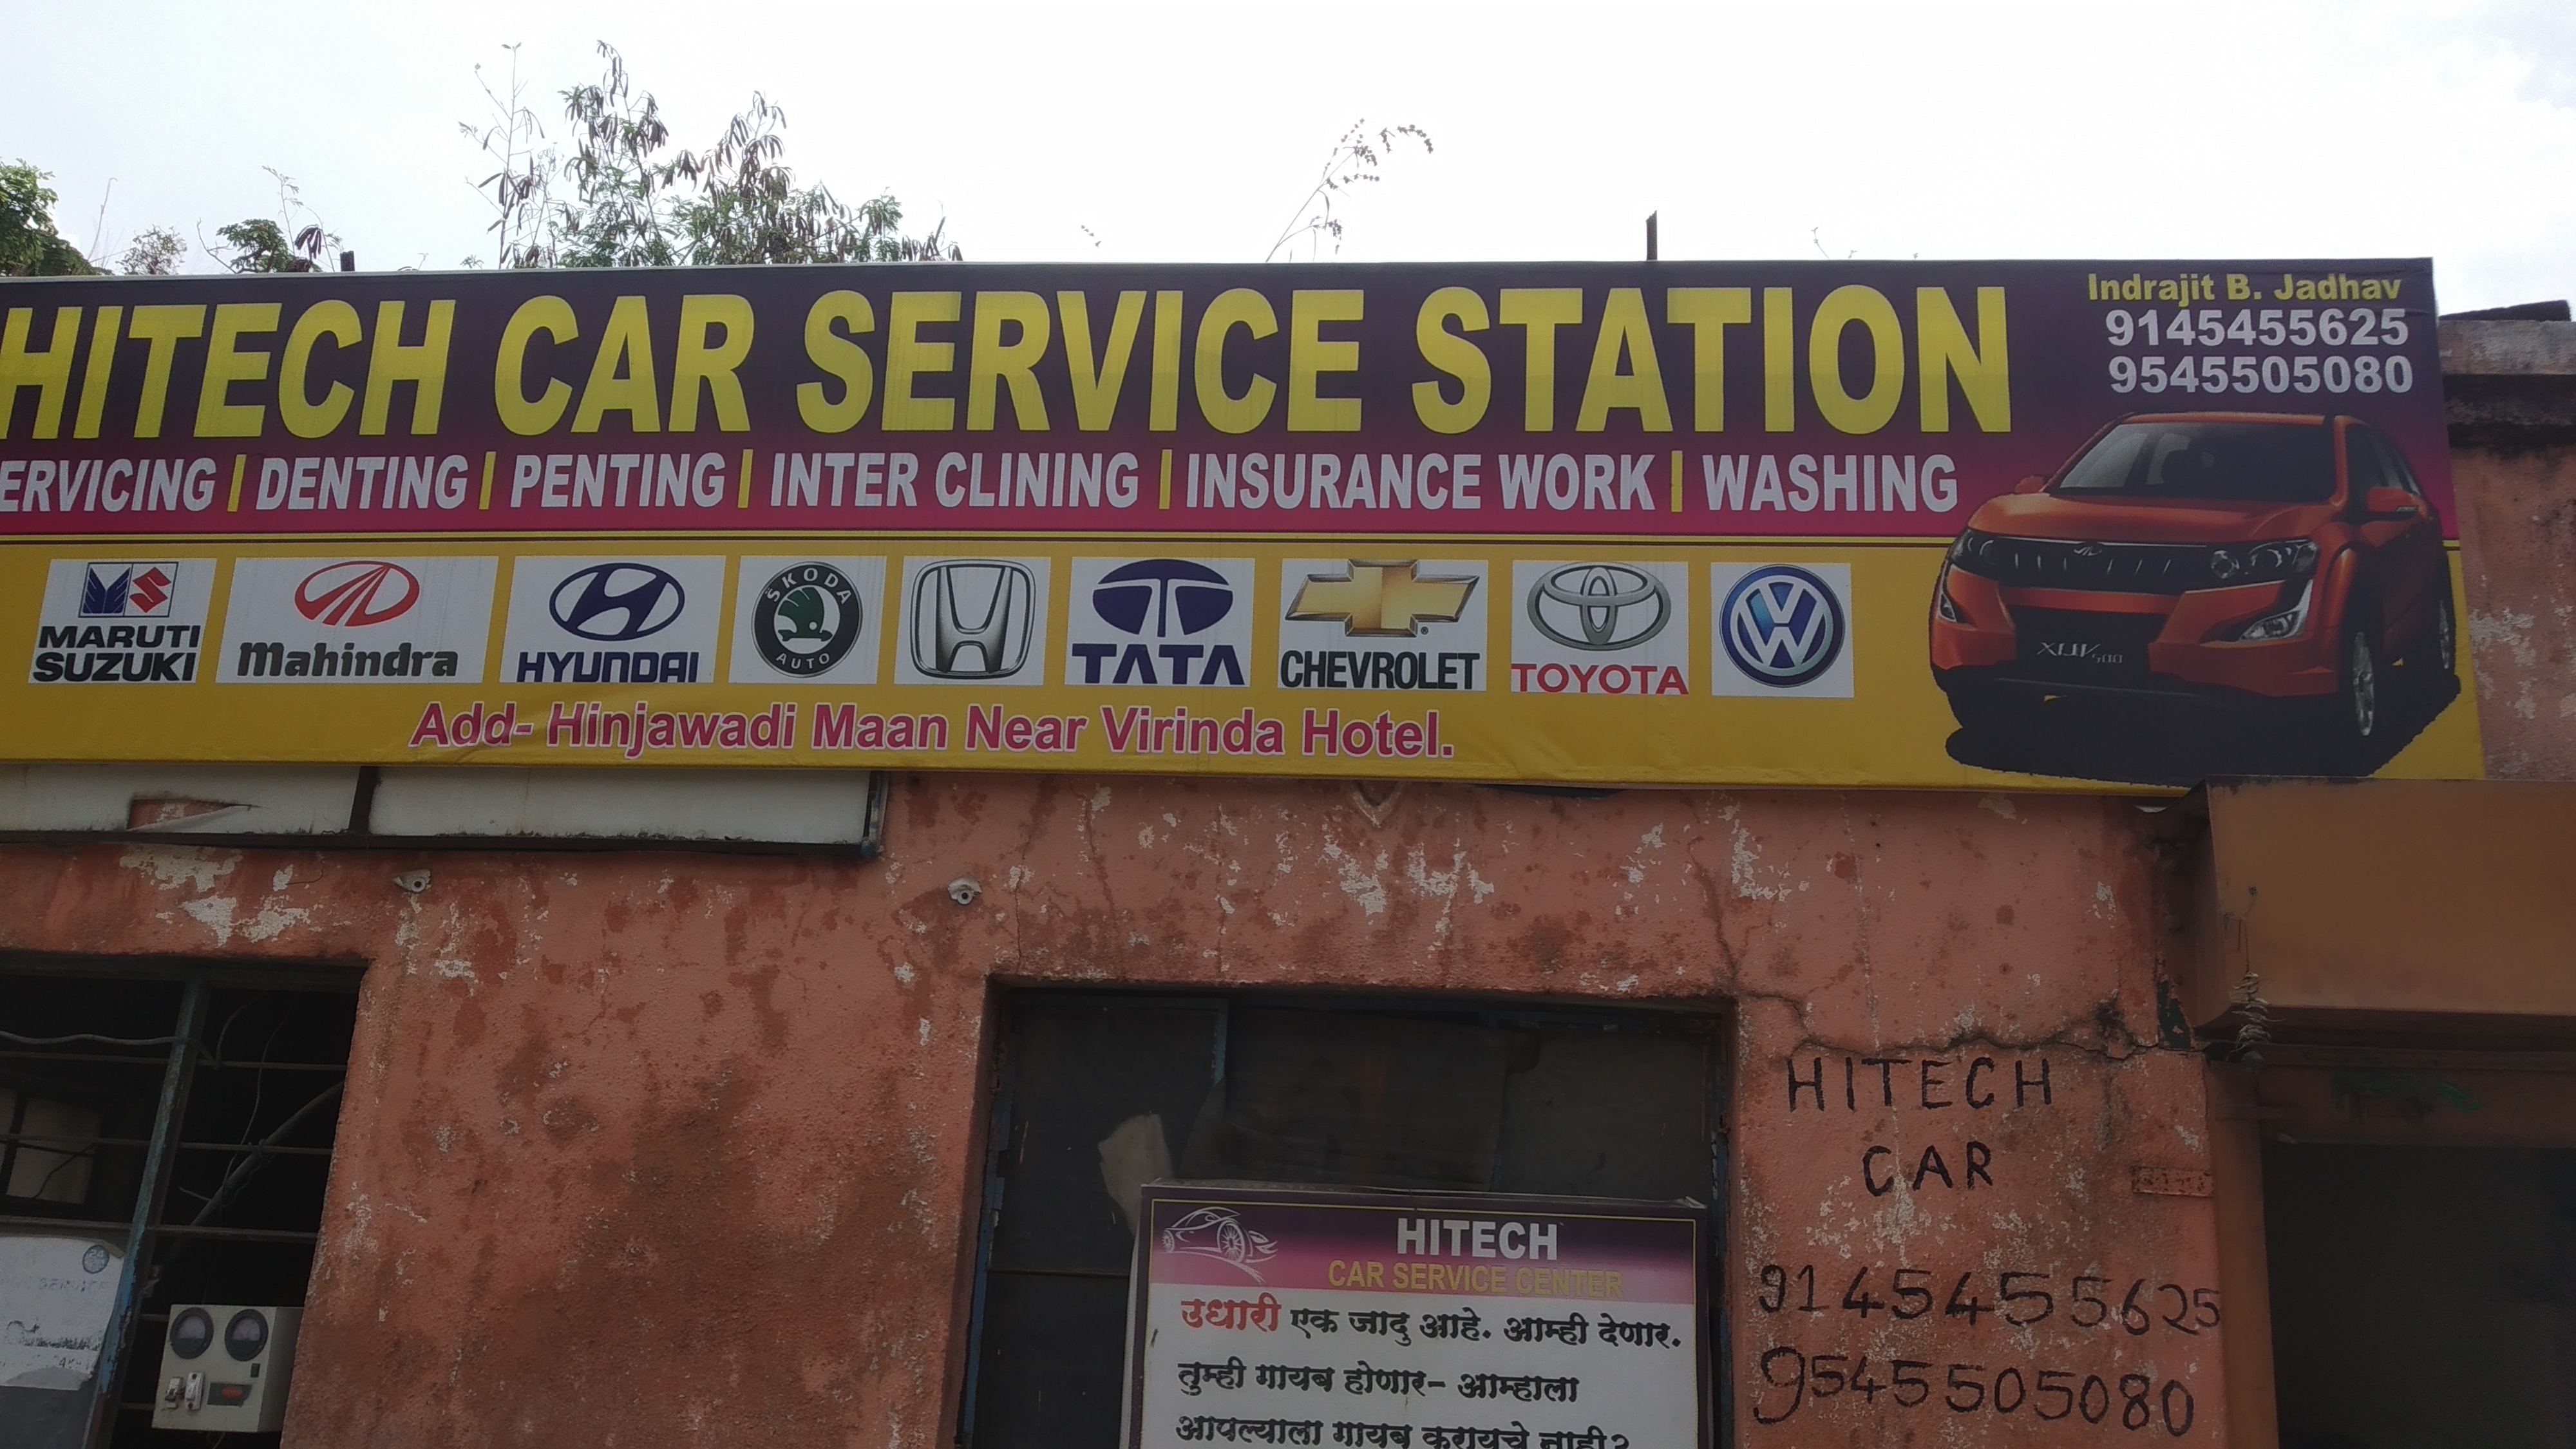 Hitech Car Service Station in Hinjewadi Pune at Affordable Price.